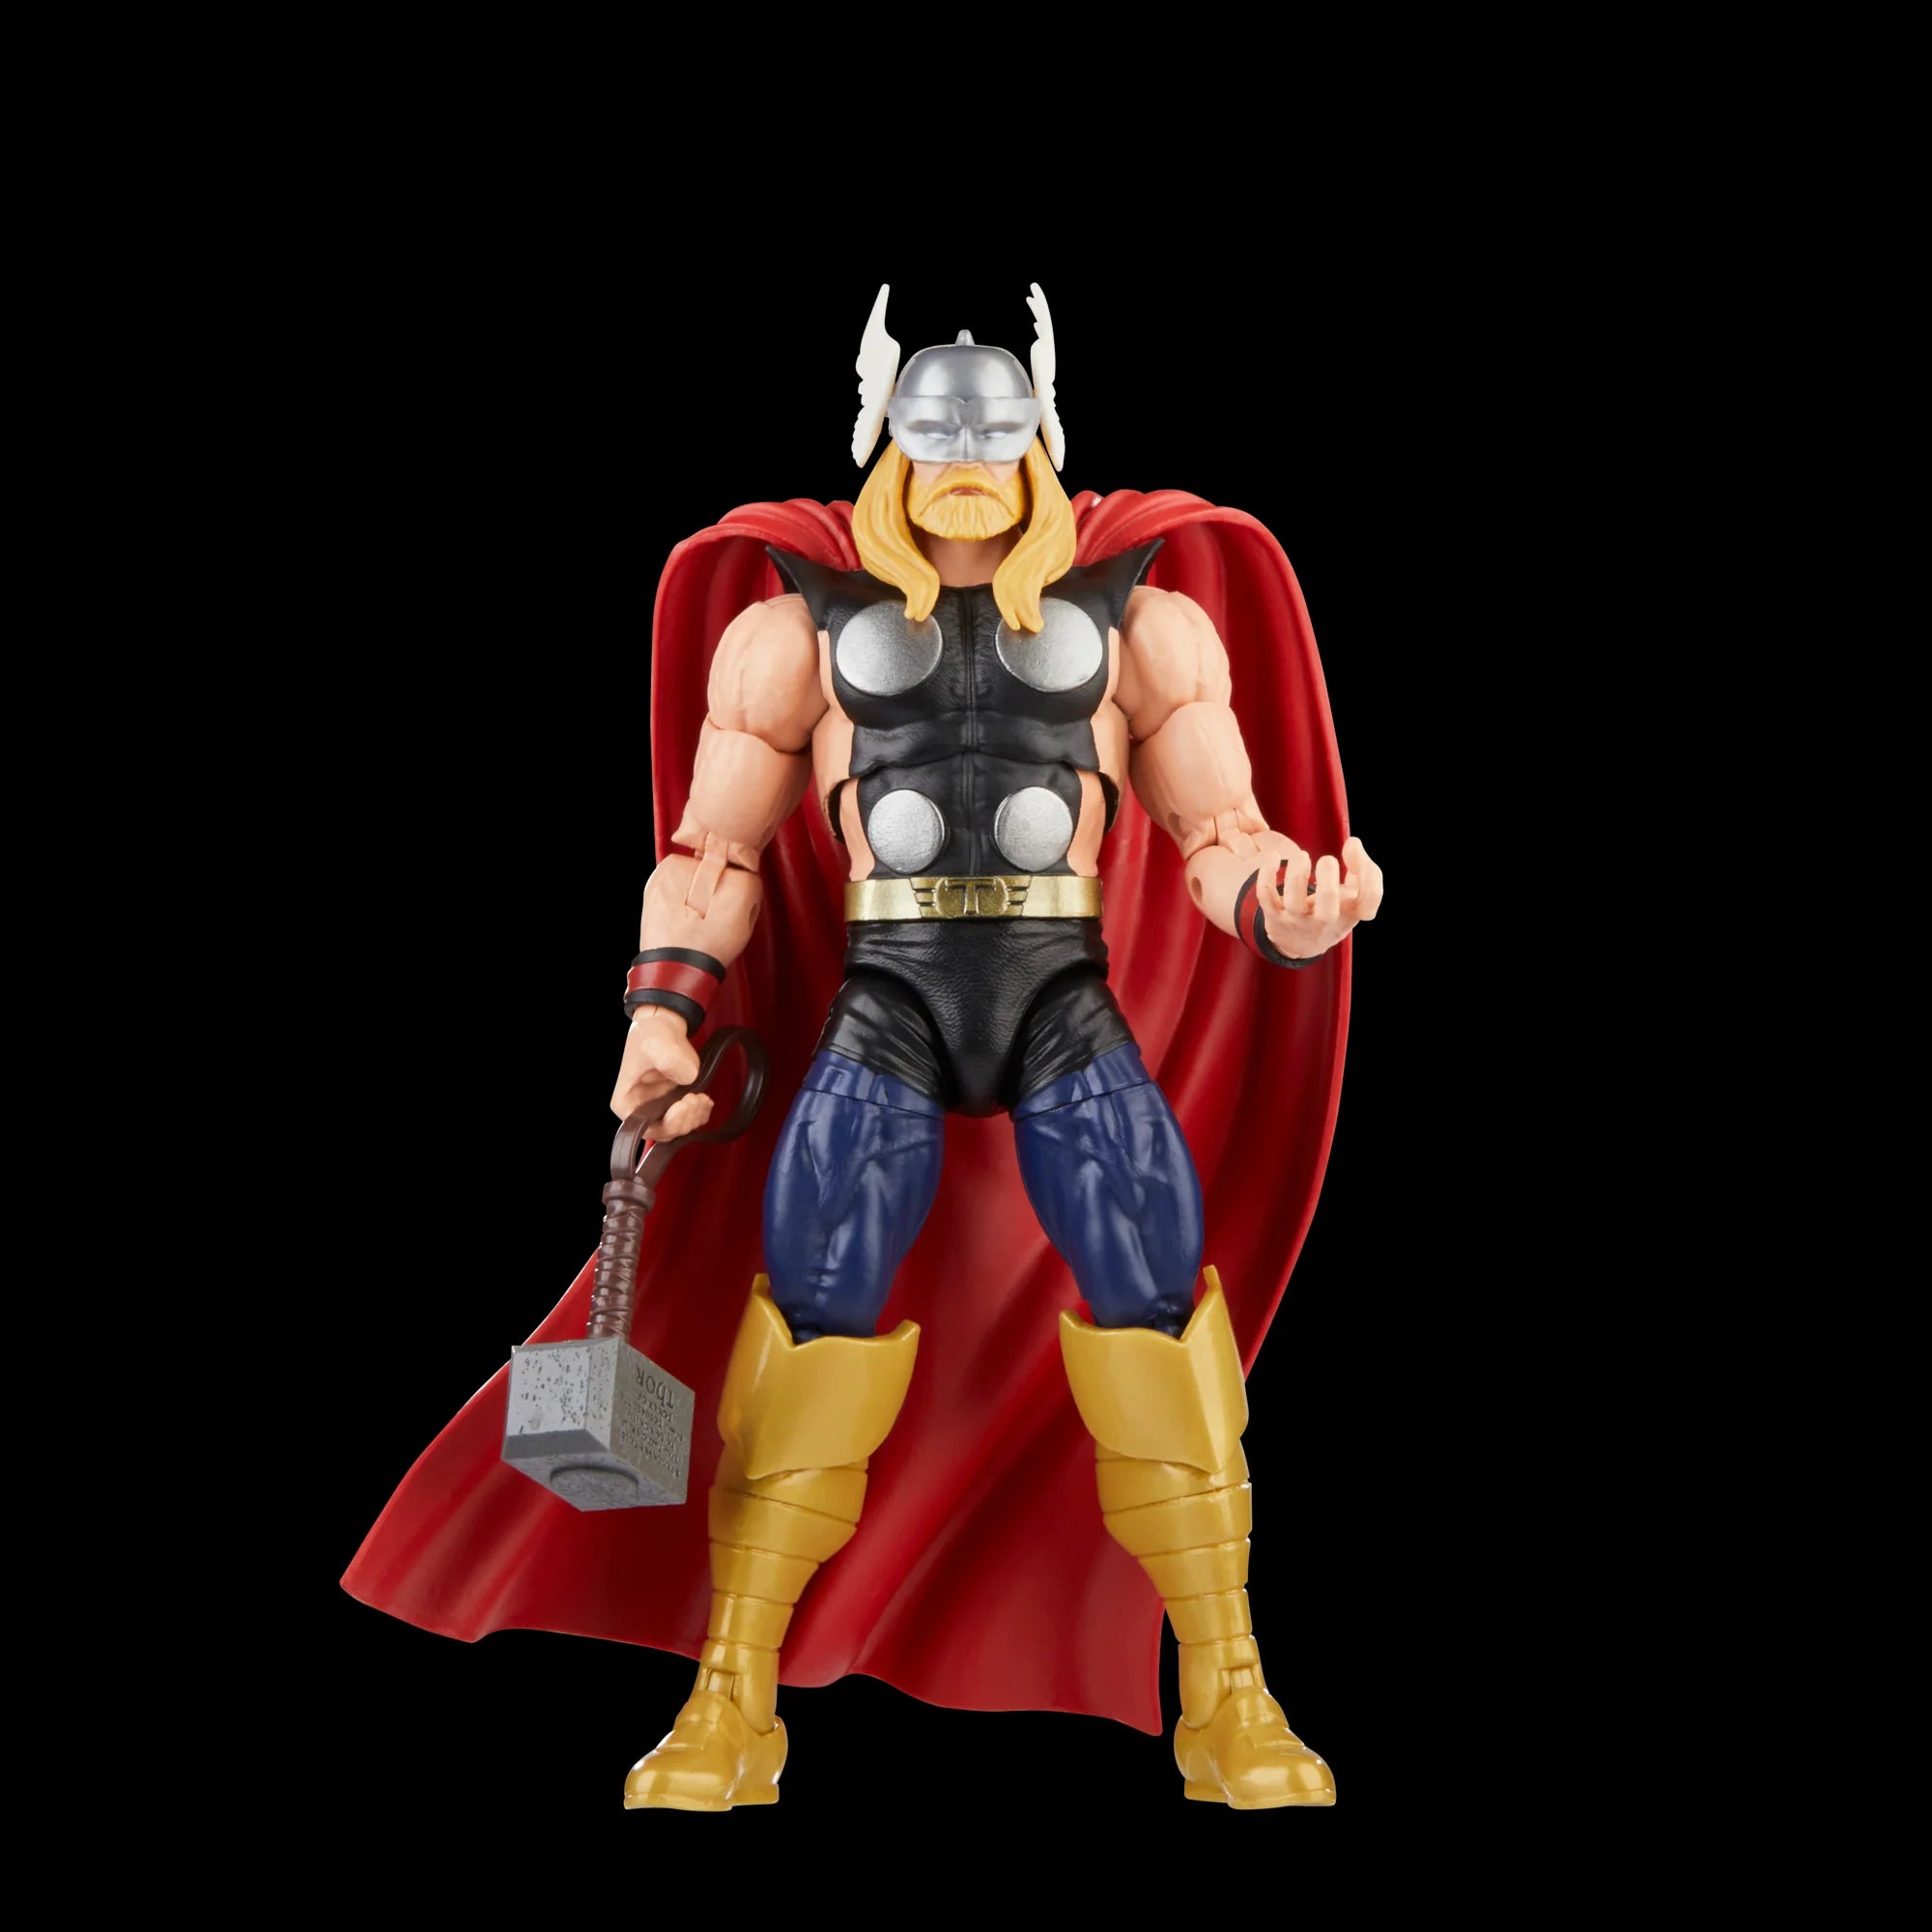 Hasbro - Marvel Legends - Avengers 60th Anniversary - Thor vs. Destroyer - Marvelous Toys